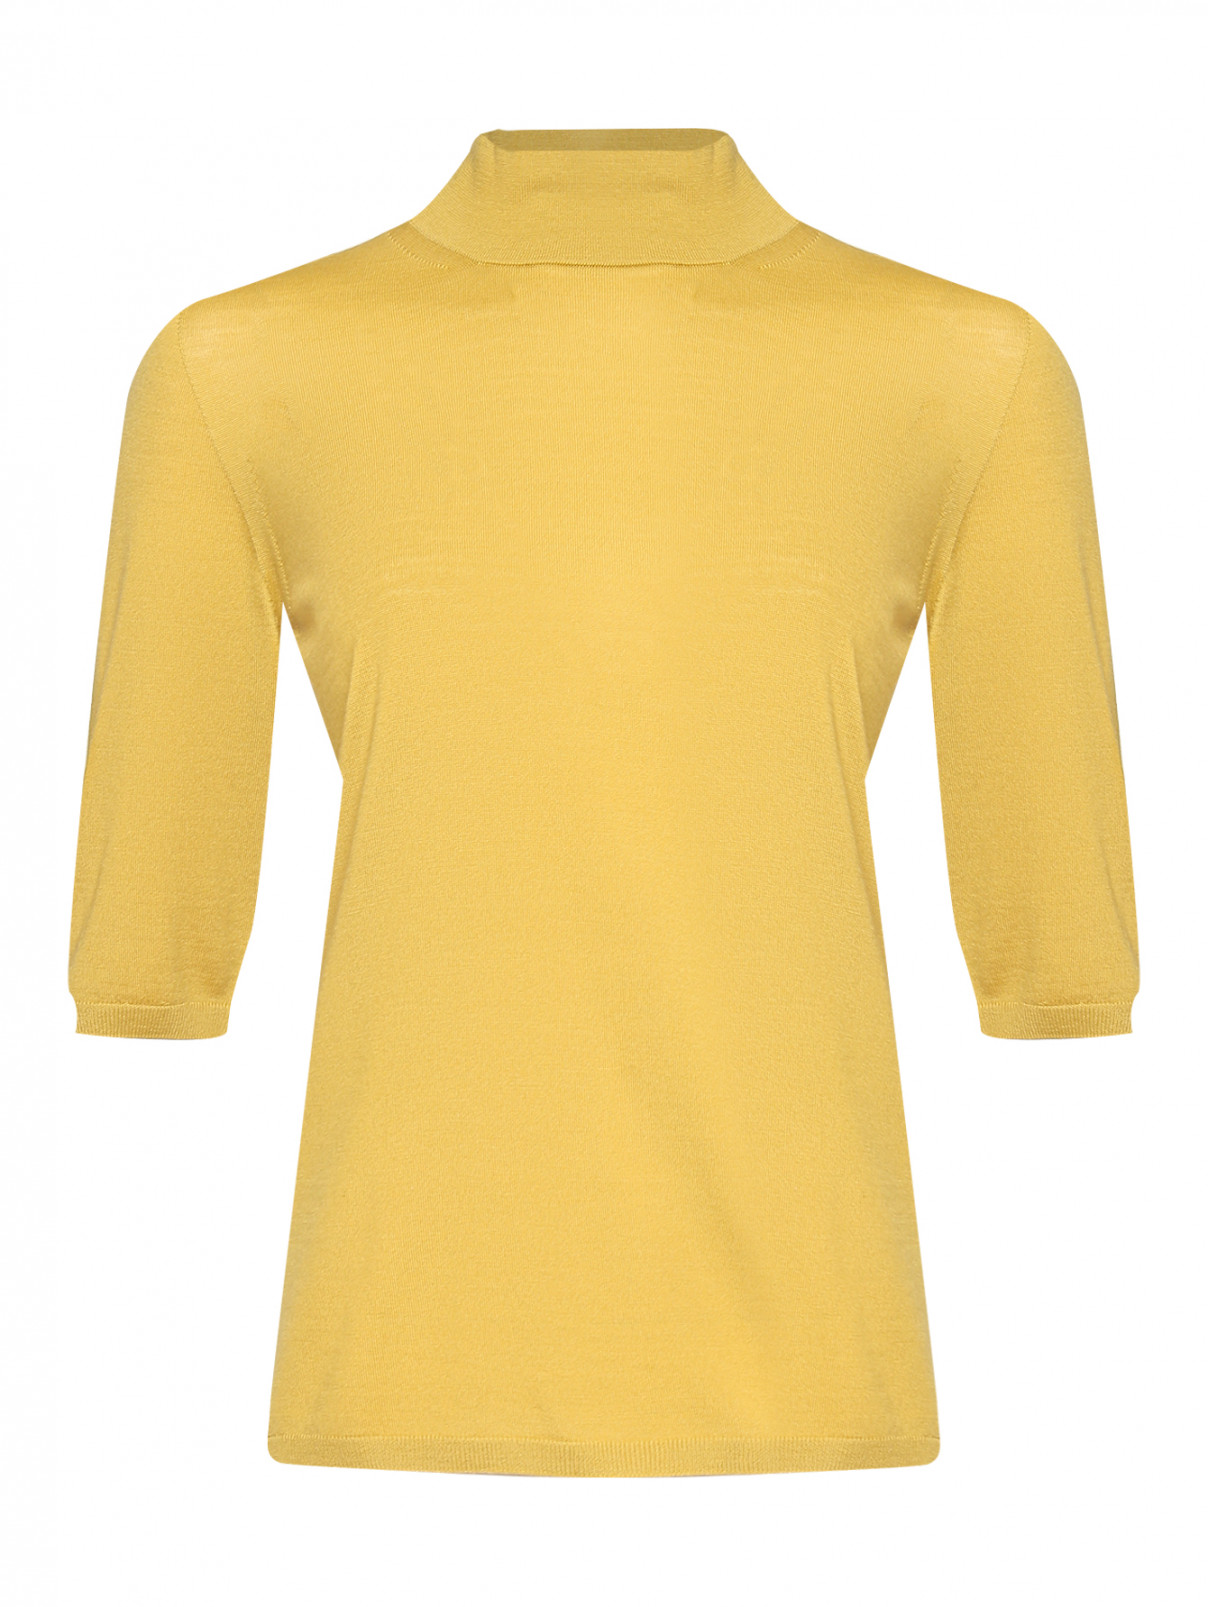 Джемпер из шерсти с короткими рукавами Max Mara  –  Общий вид  – Цвет:  Желтый